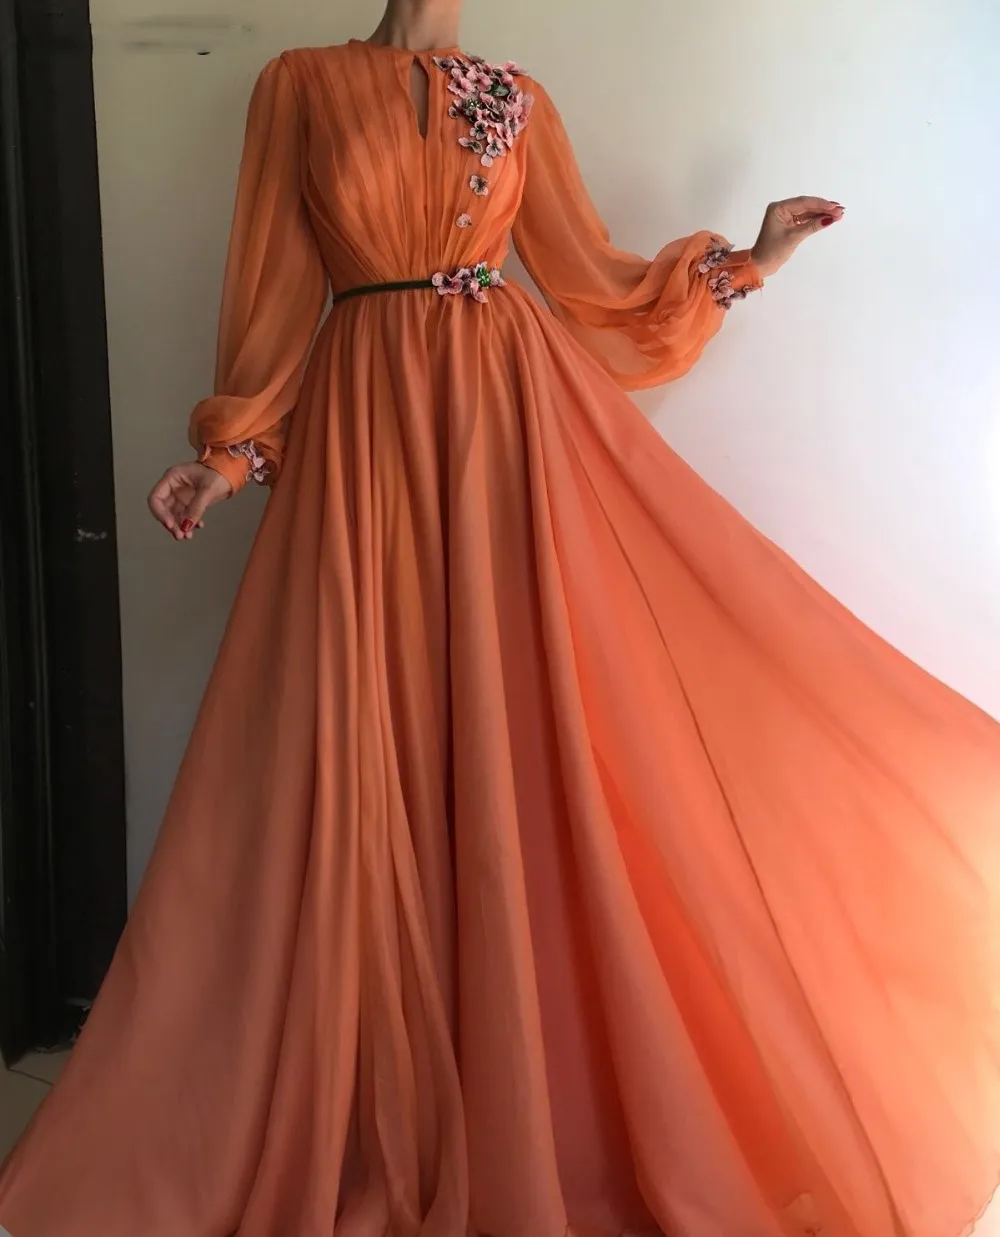 Corail arabe marocain robes de bal fête élégante pour les femmes célébrité manches longues en mousseline de soie dubaï Caftans robes formelles 263T